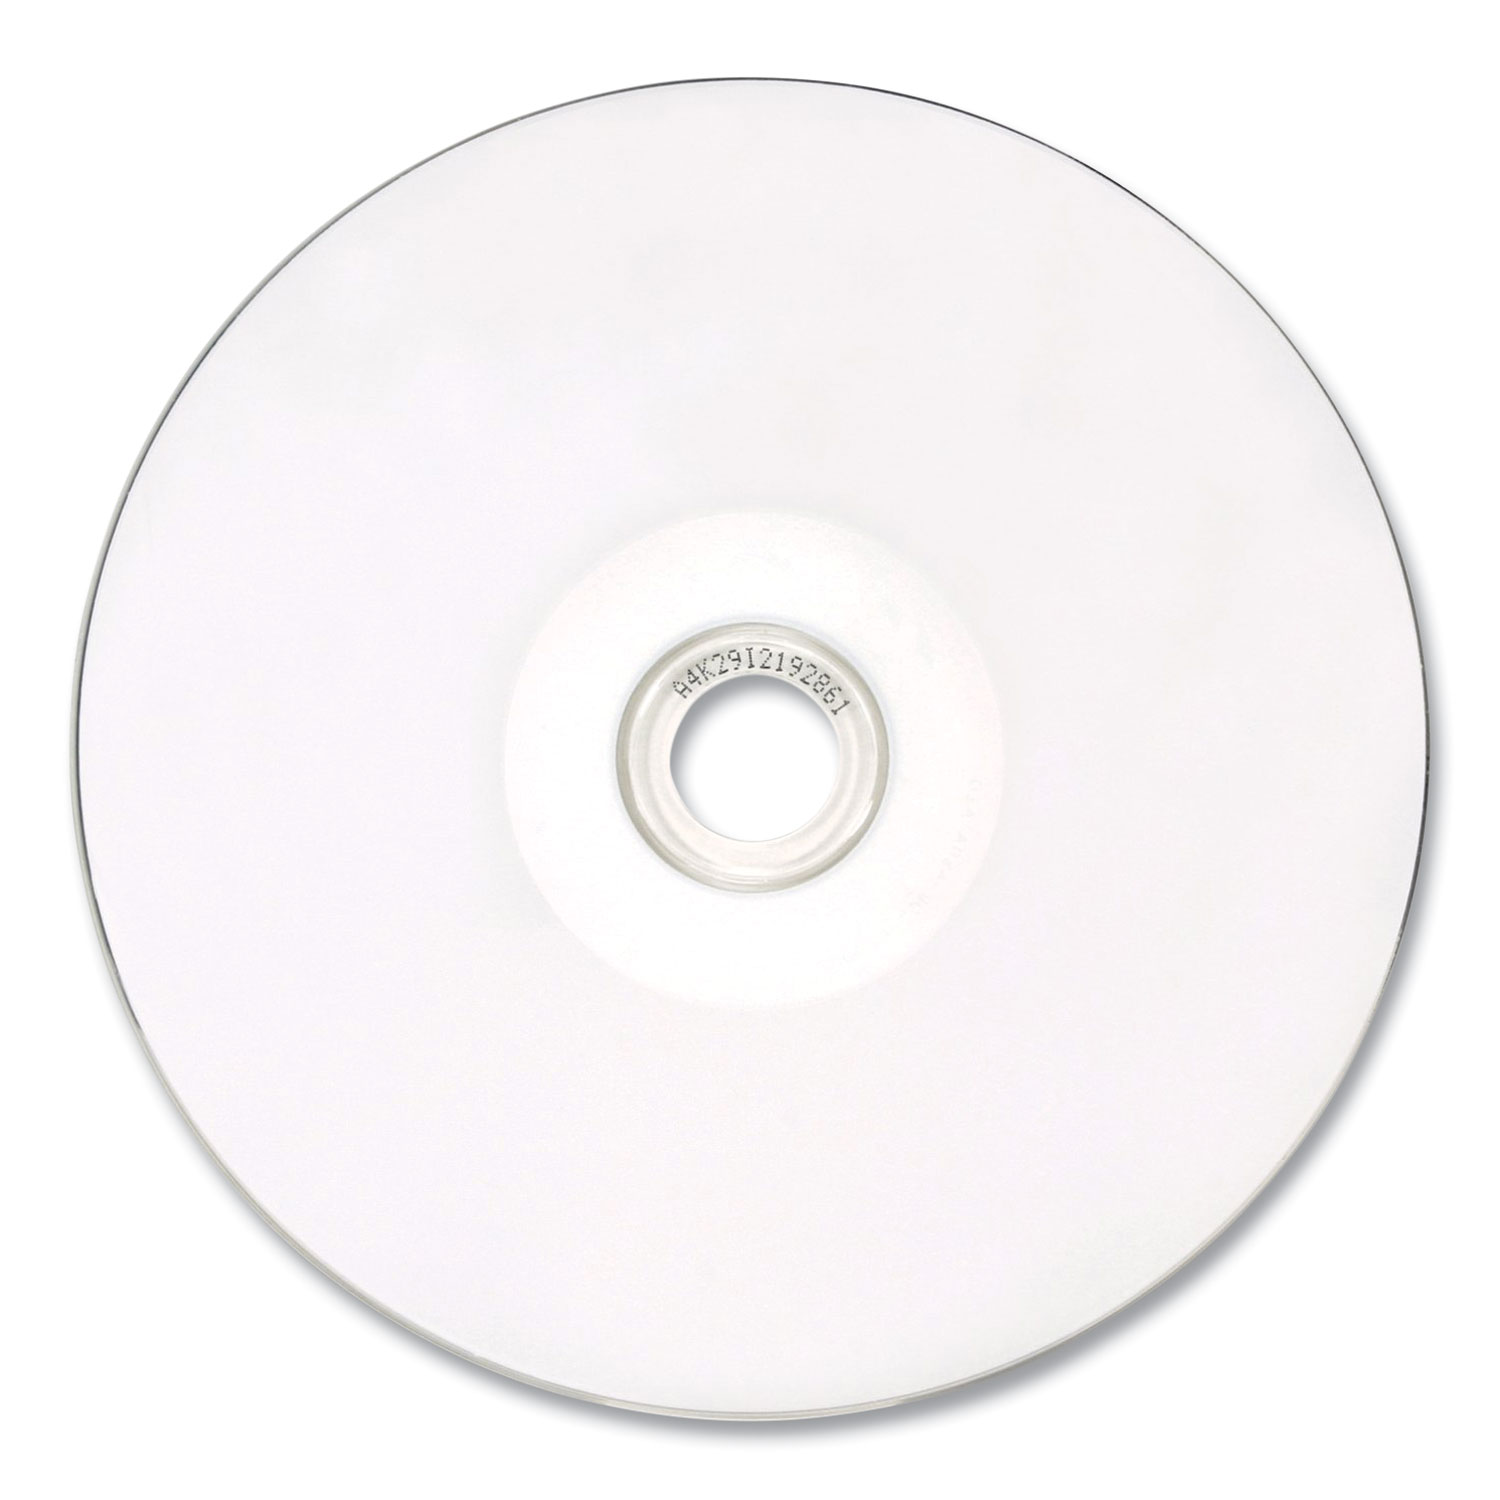 Verbatim DataLife Plus 700MB 52X CD-R White Thermal Hub Printable 100 Packs  Plastic Wrap Discs in Plastic Wrap Model 97018 